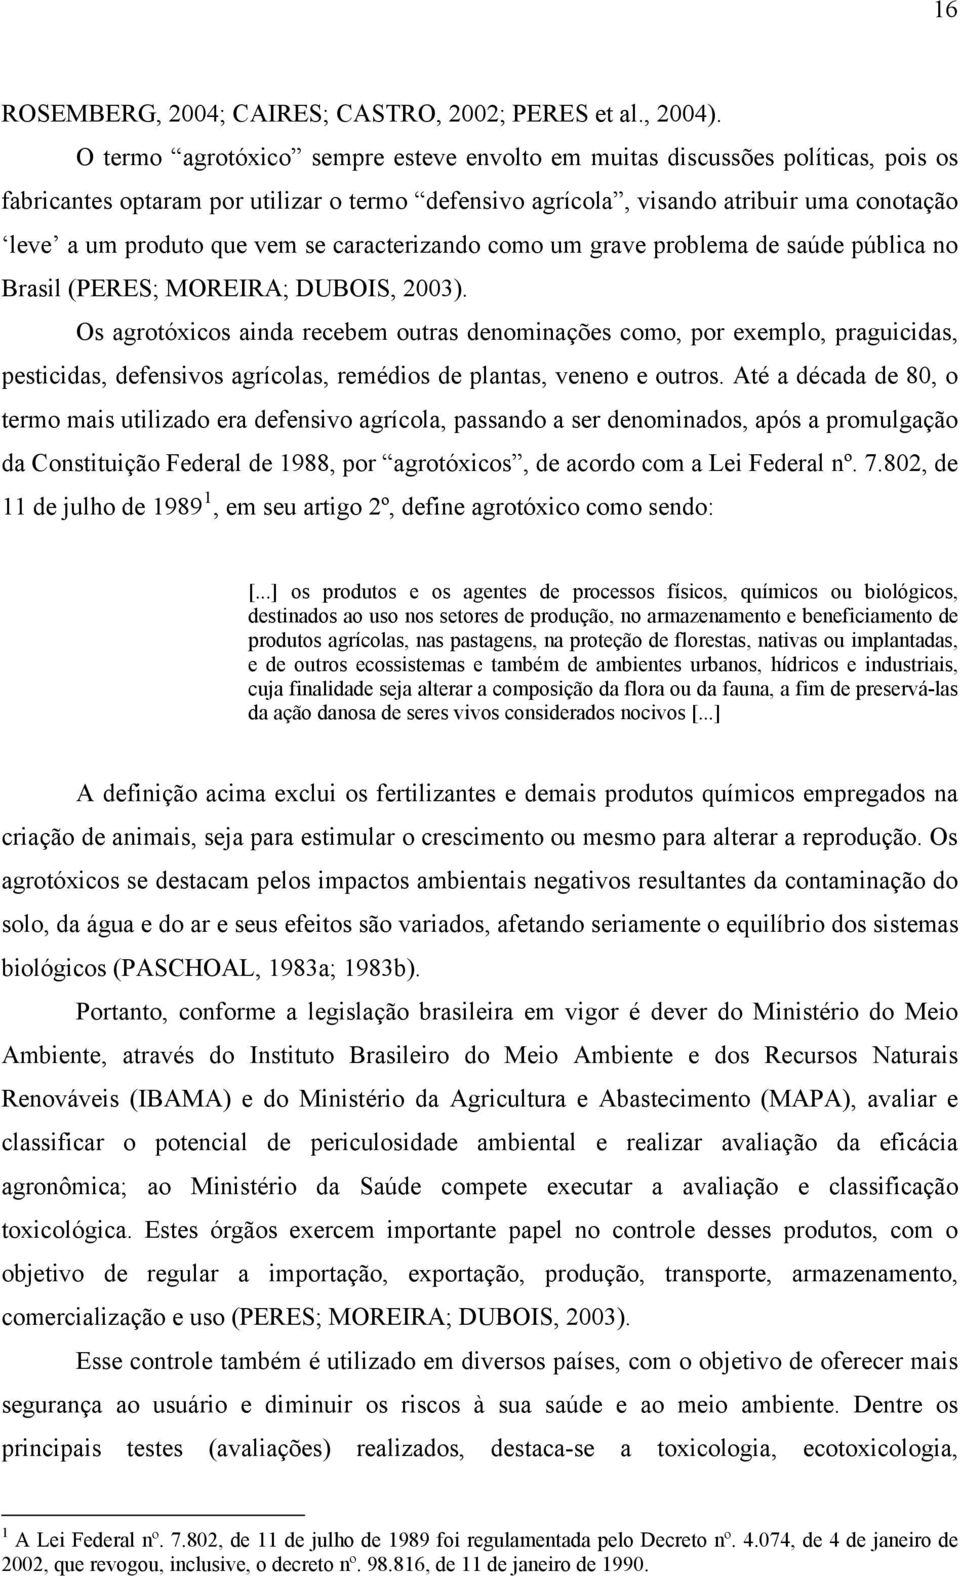 se caracterizando como um grave problema de saúde pública no Brasil (PERES; MOREIRA; DUBOIS, 2003).